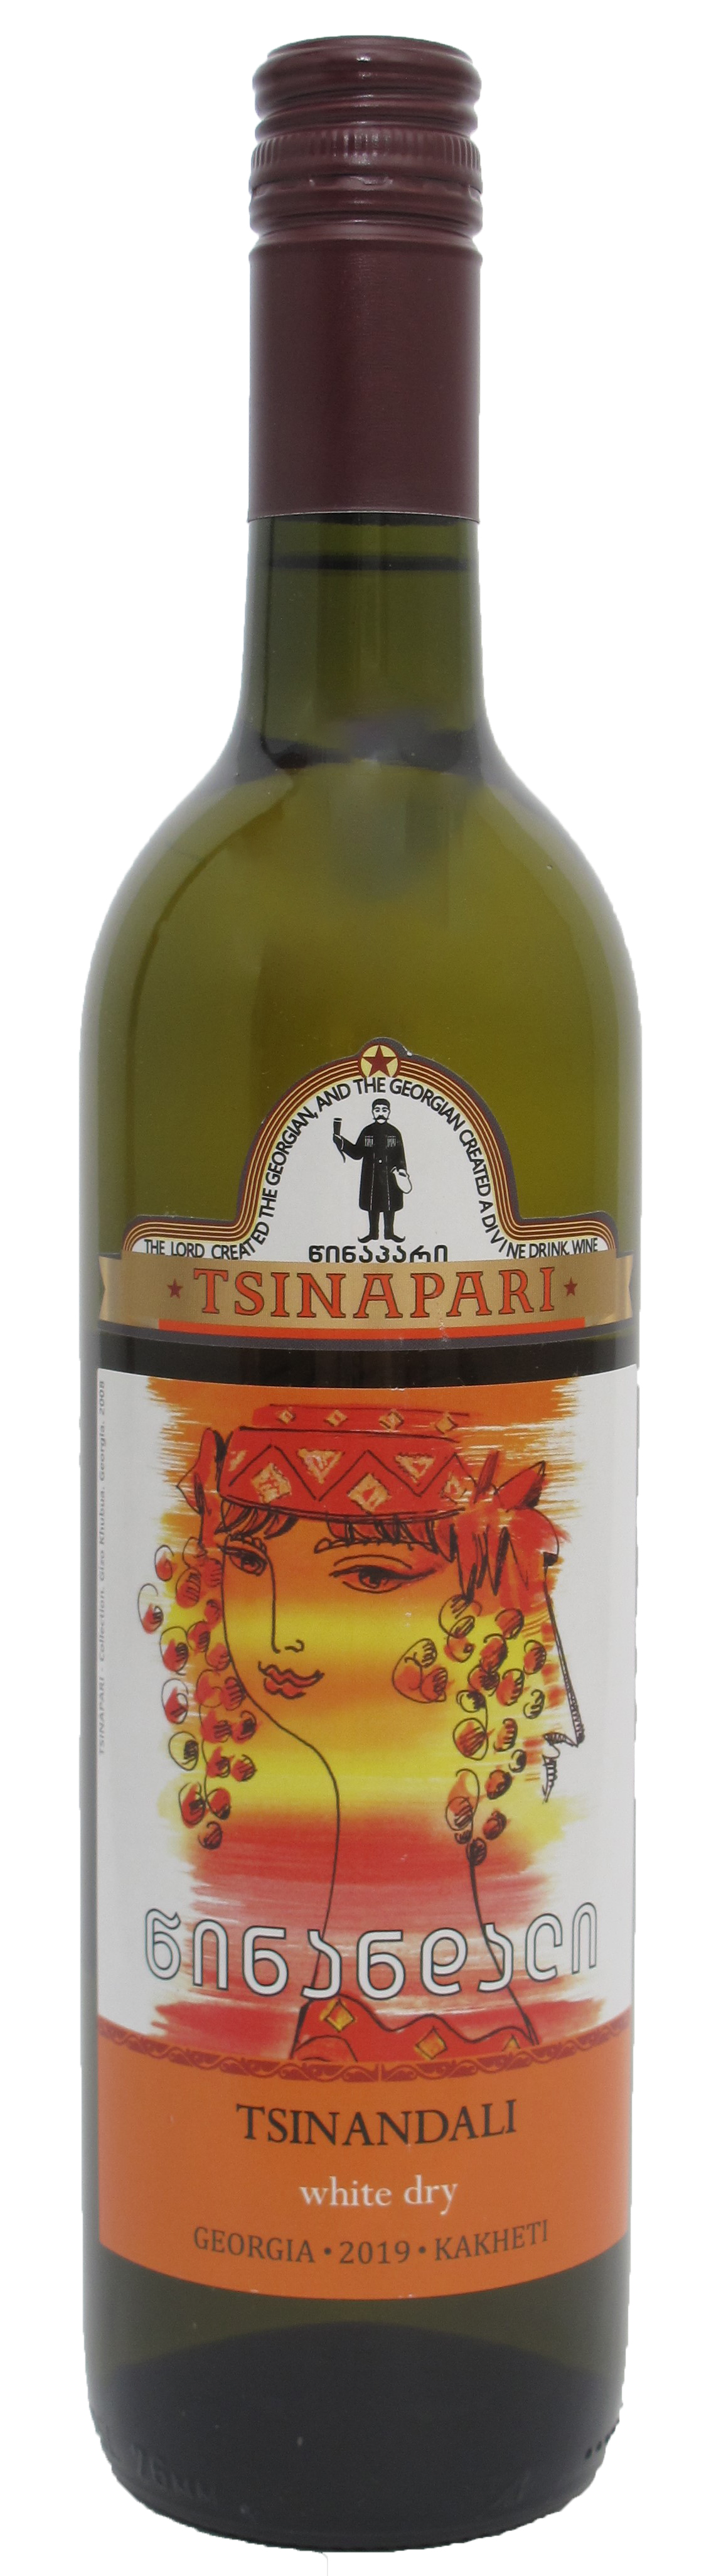 TSINANDALI - Georgischer Wein - Amphorenwein | Rotweine